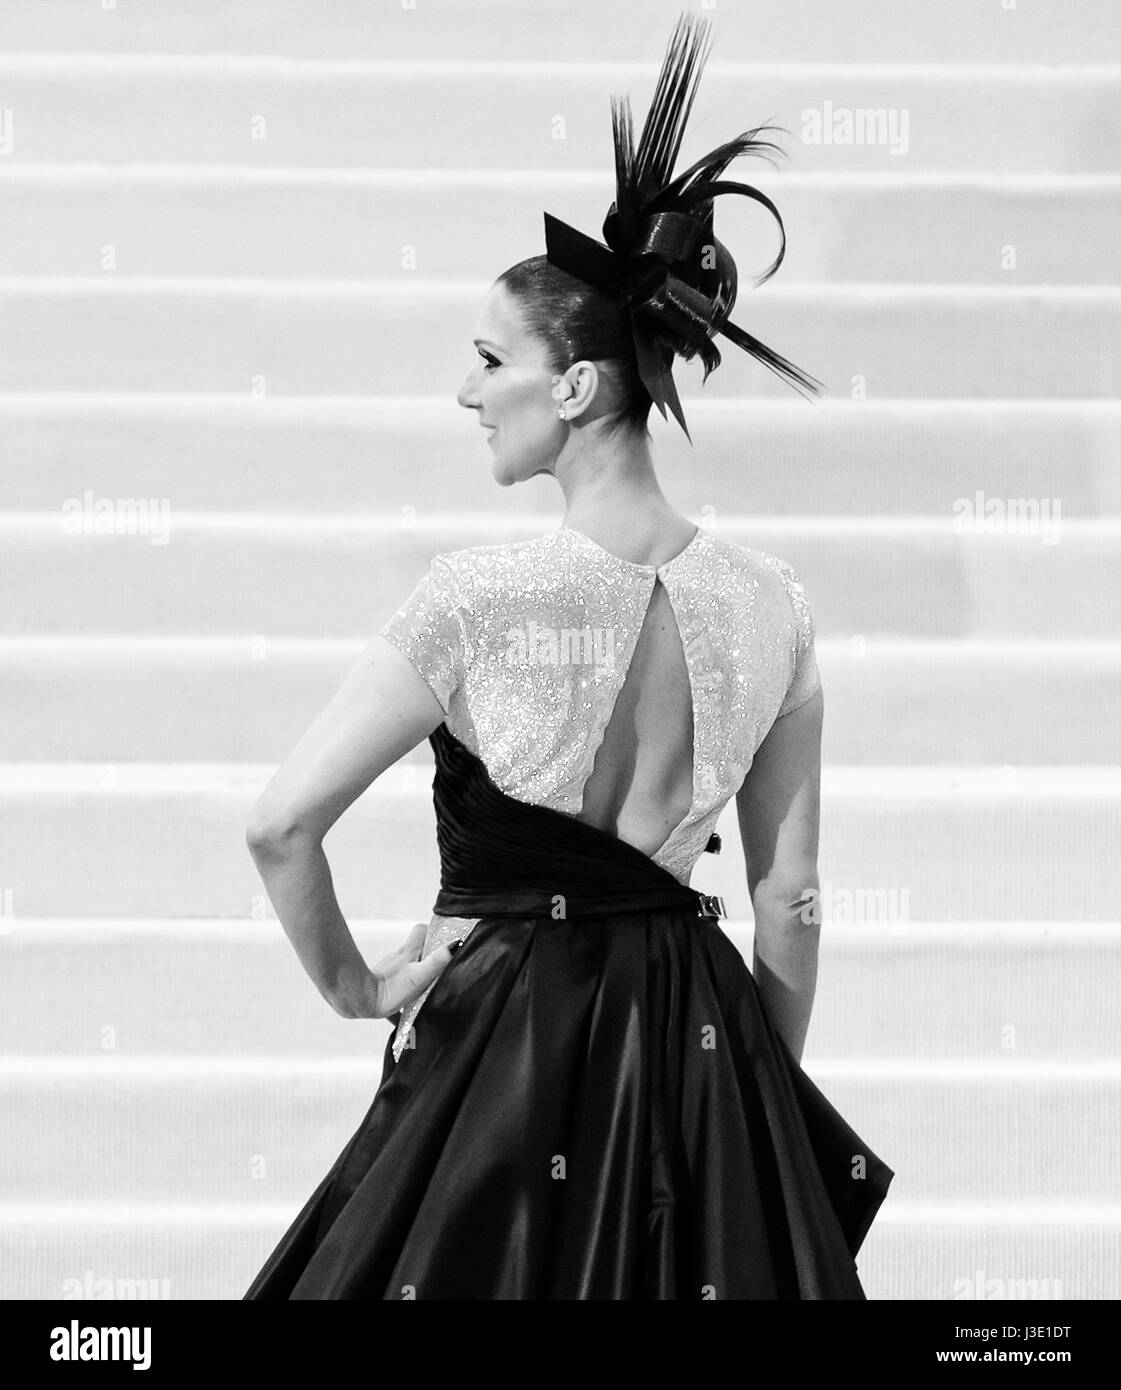 Celine dion 2017 Banque d'images noir et blanc - Alamy